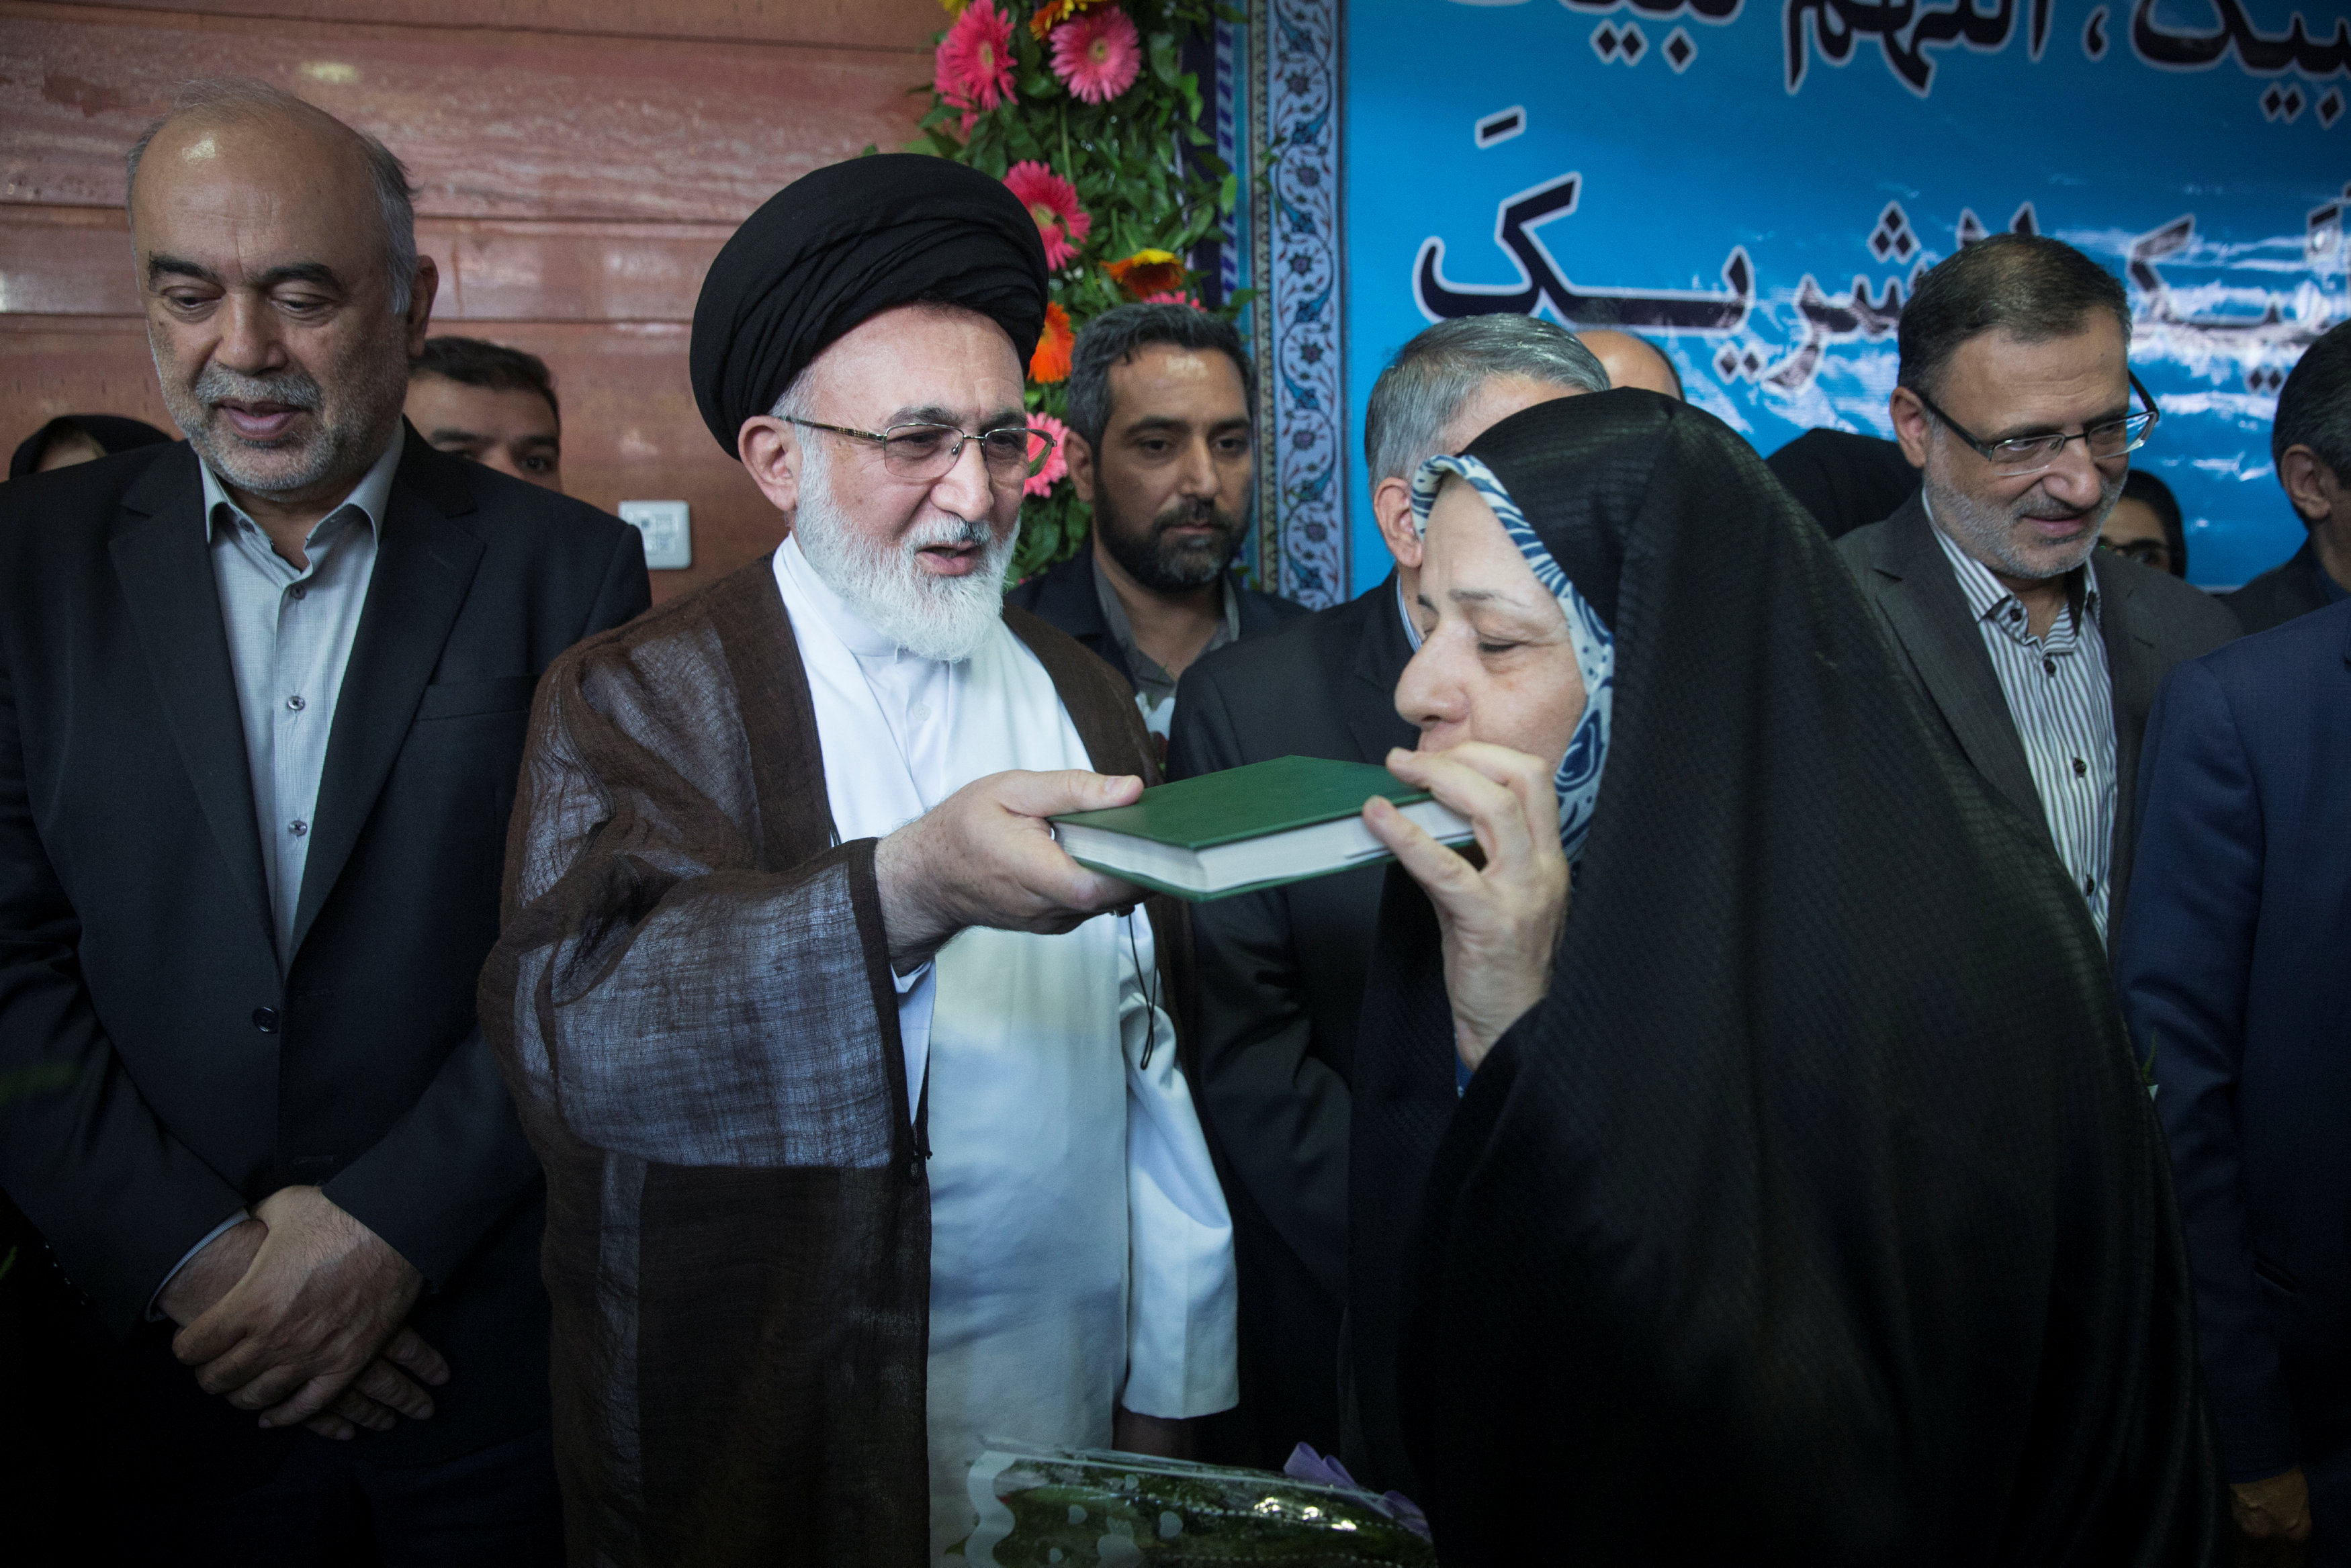 الحجاج الإيرانيين يقبلون المصحف الشريف قبل مغادرة بلادهم